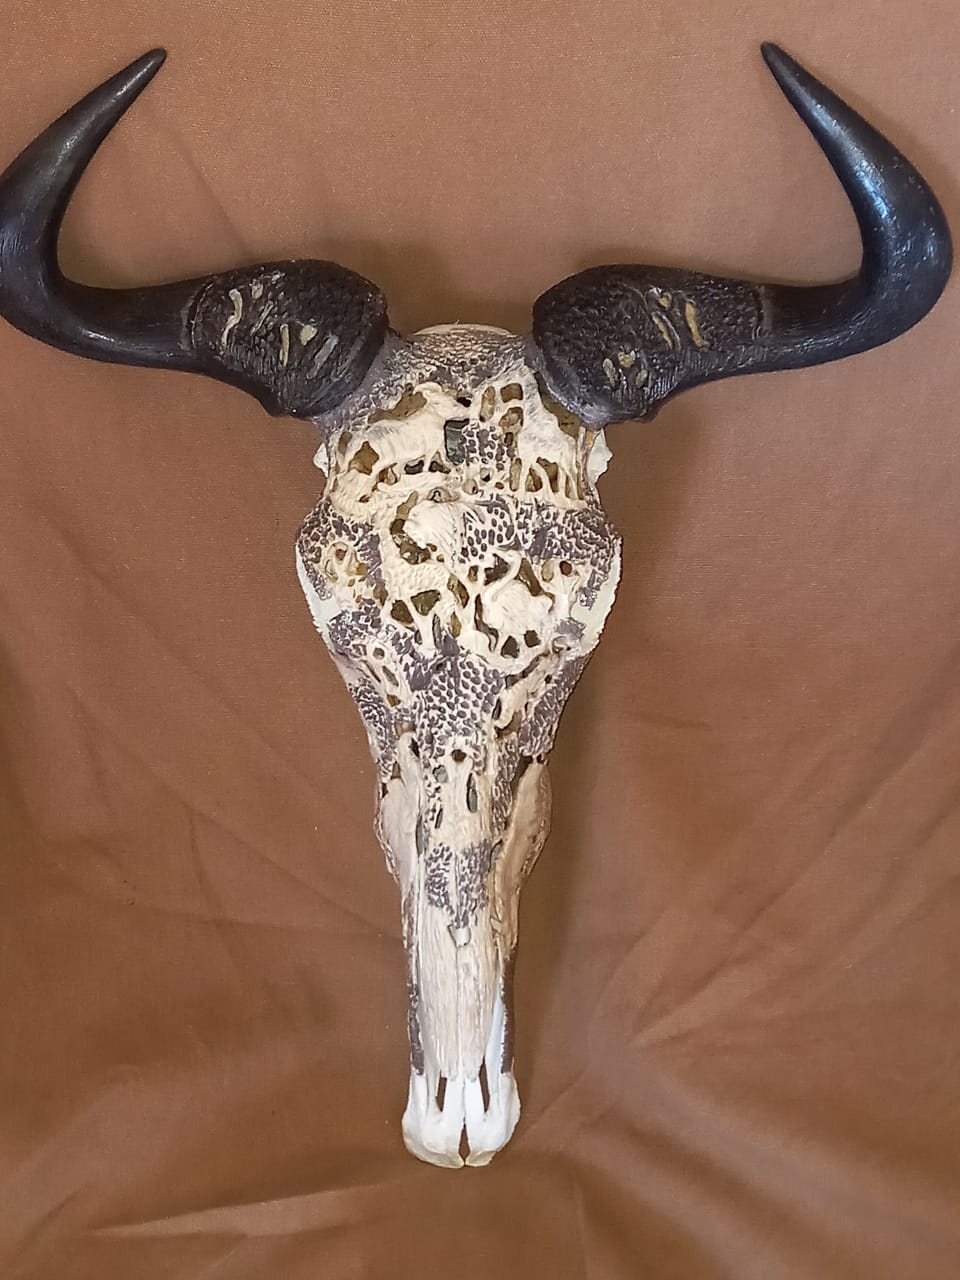 Bluewildebeest Skull & Horns